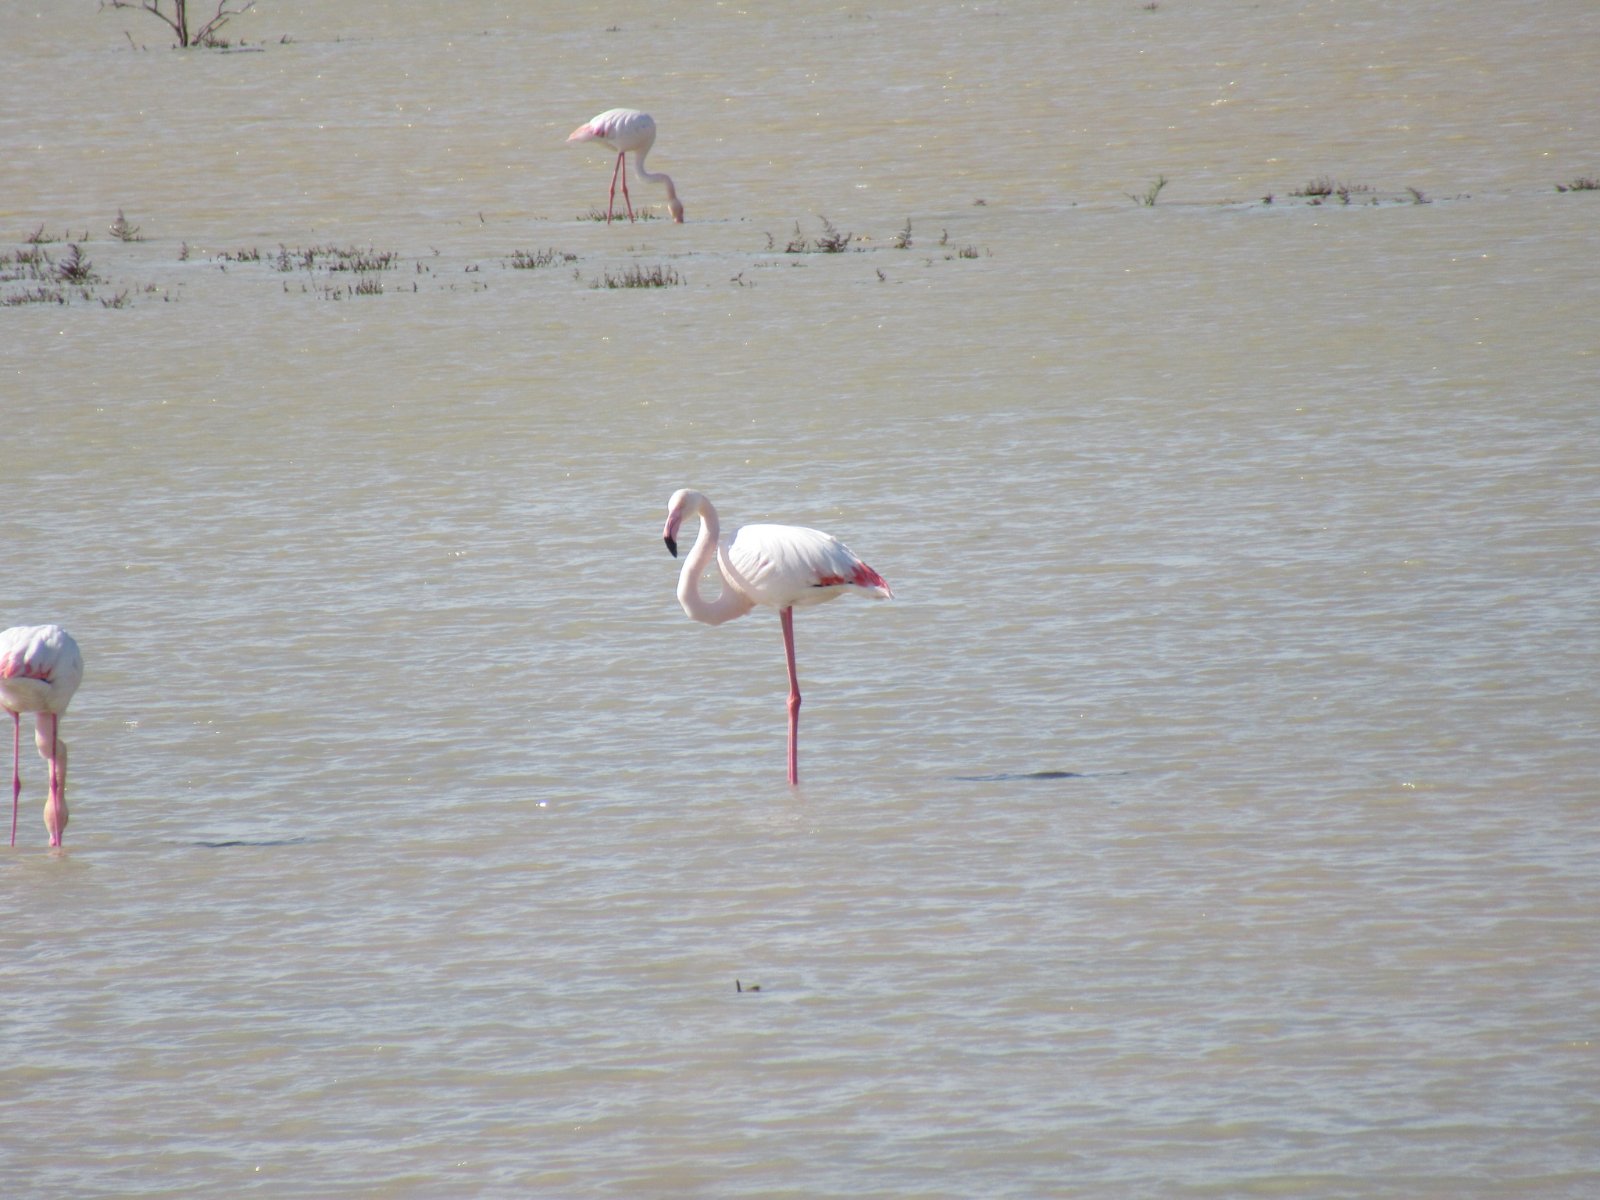 viber image 2021 02 18 18 11 33 exclusive, Paralimni Lake, Flamingo